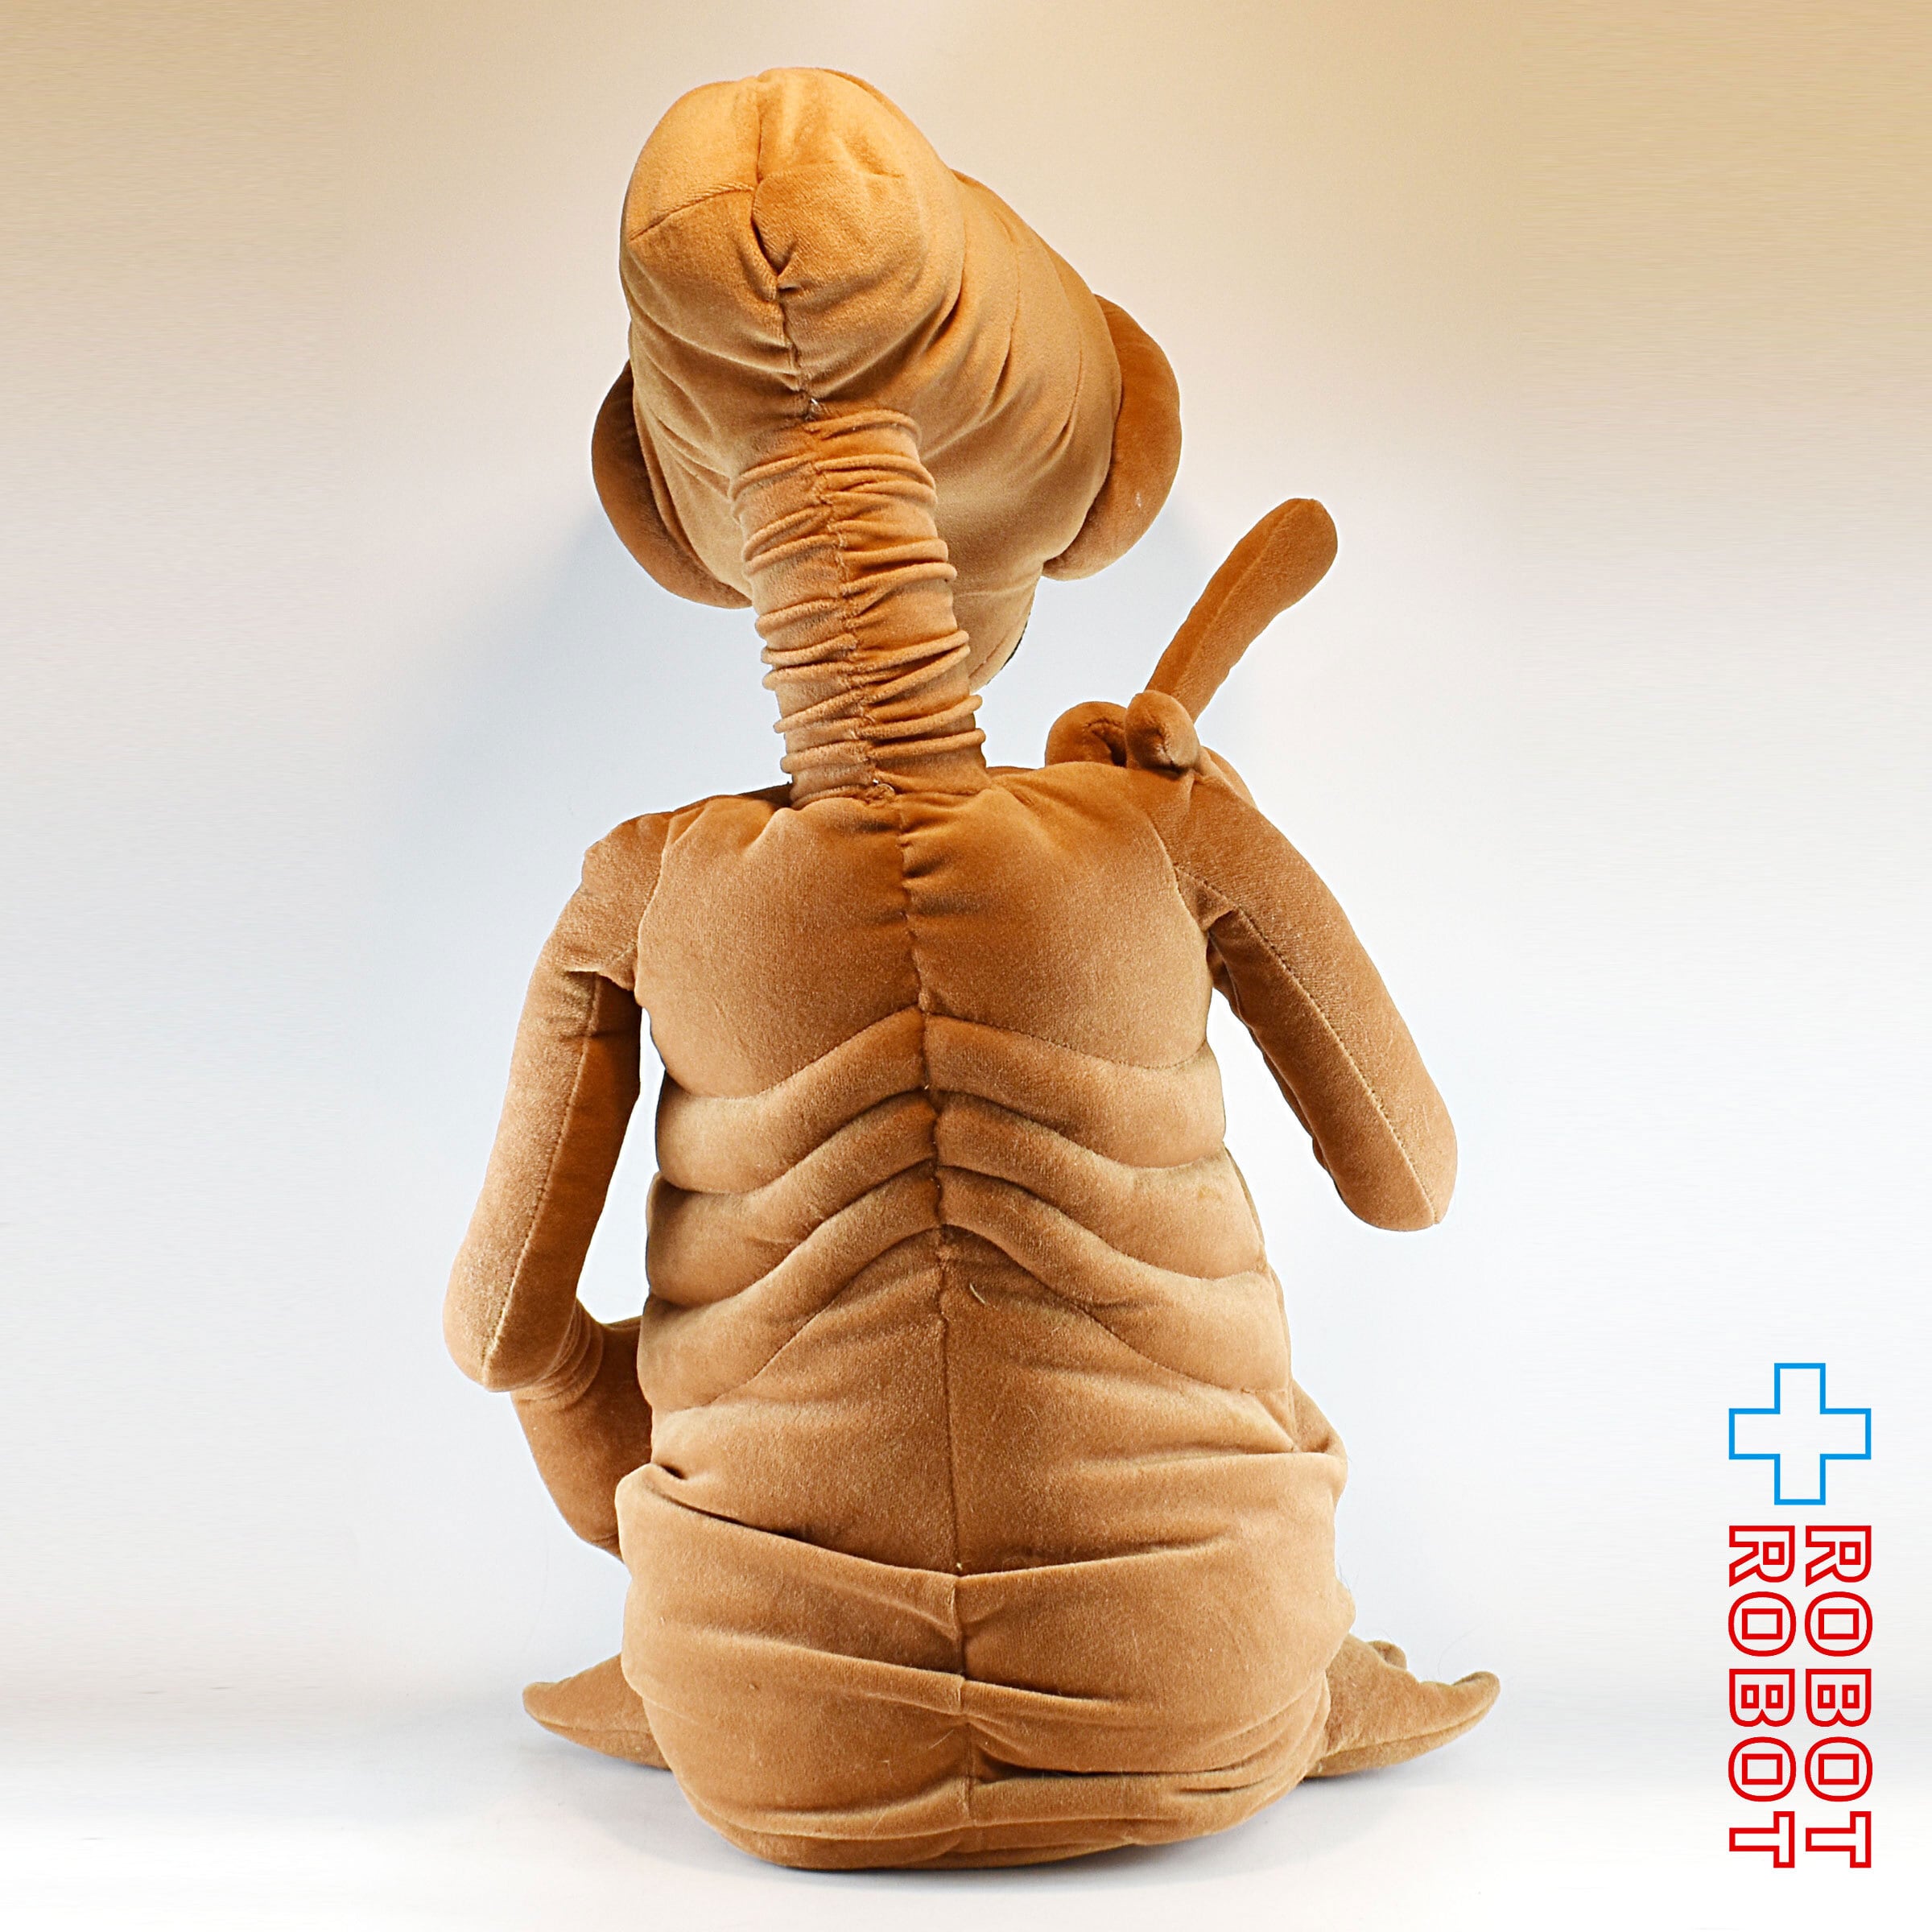 トイザらス E.T. 60センチ ぬいぐるみ人形 – ROBOTROBOT